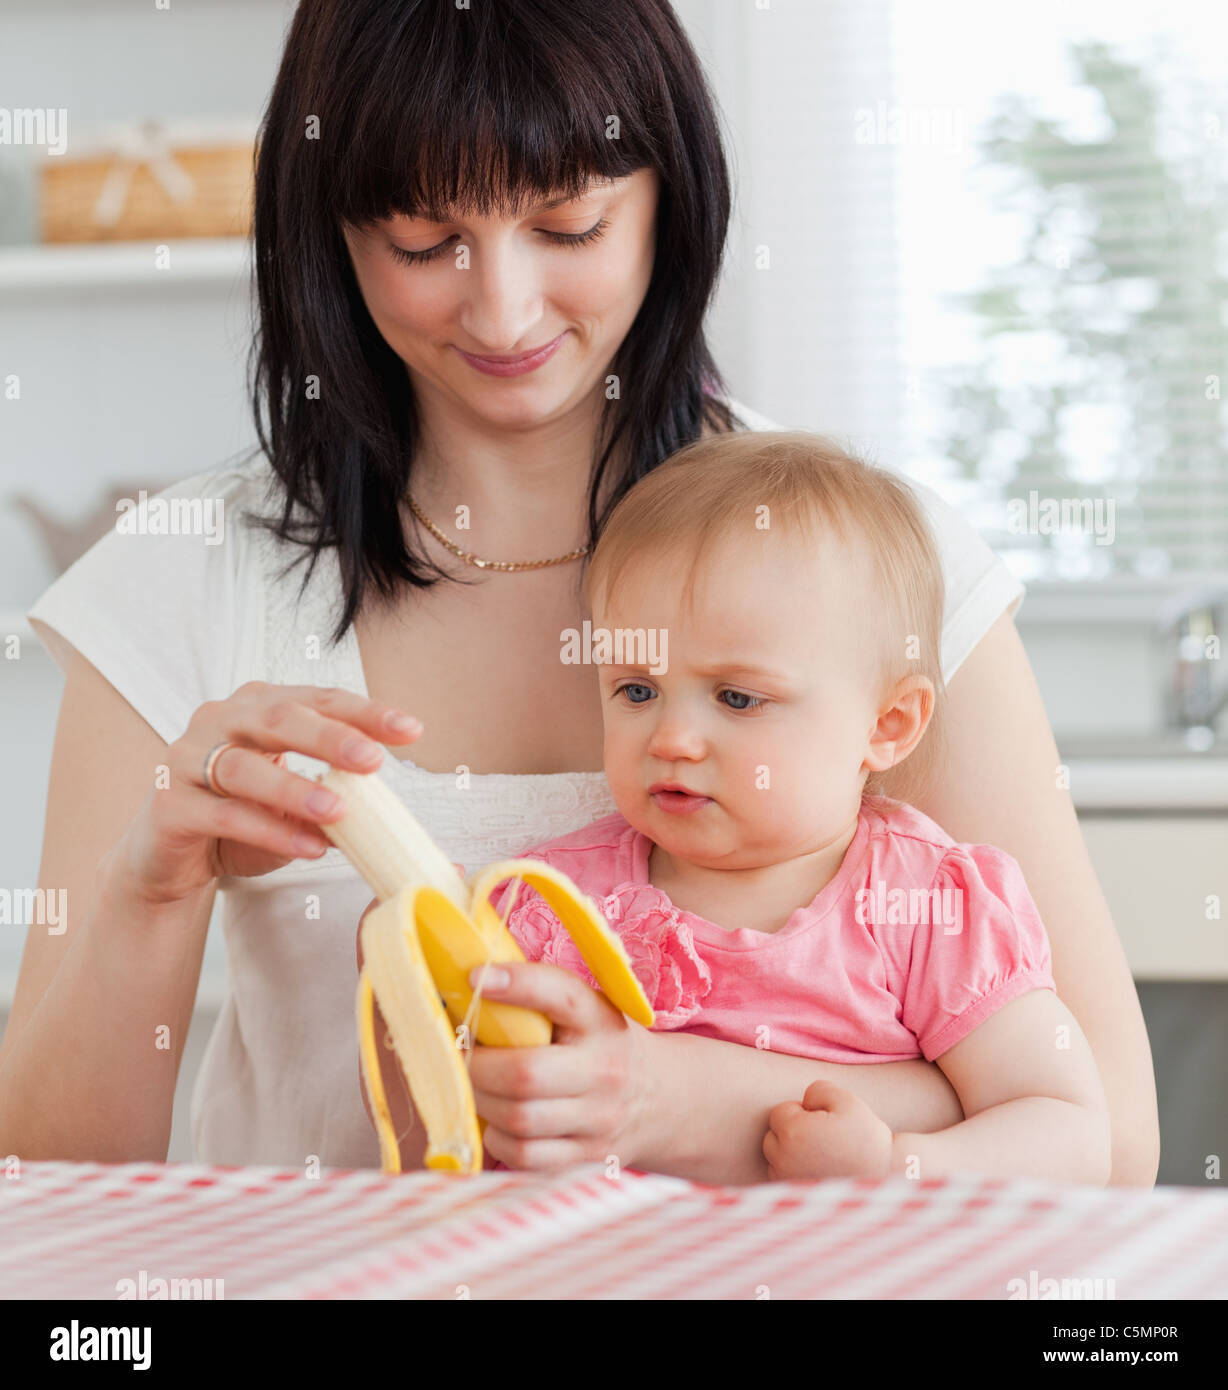 Encantadora mujer morena de pelar una banana mientras sostiene a su bebé Foto de stock